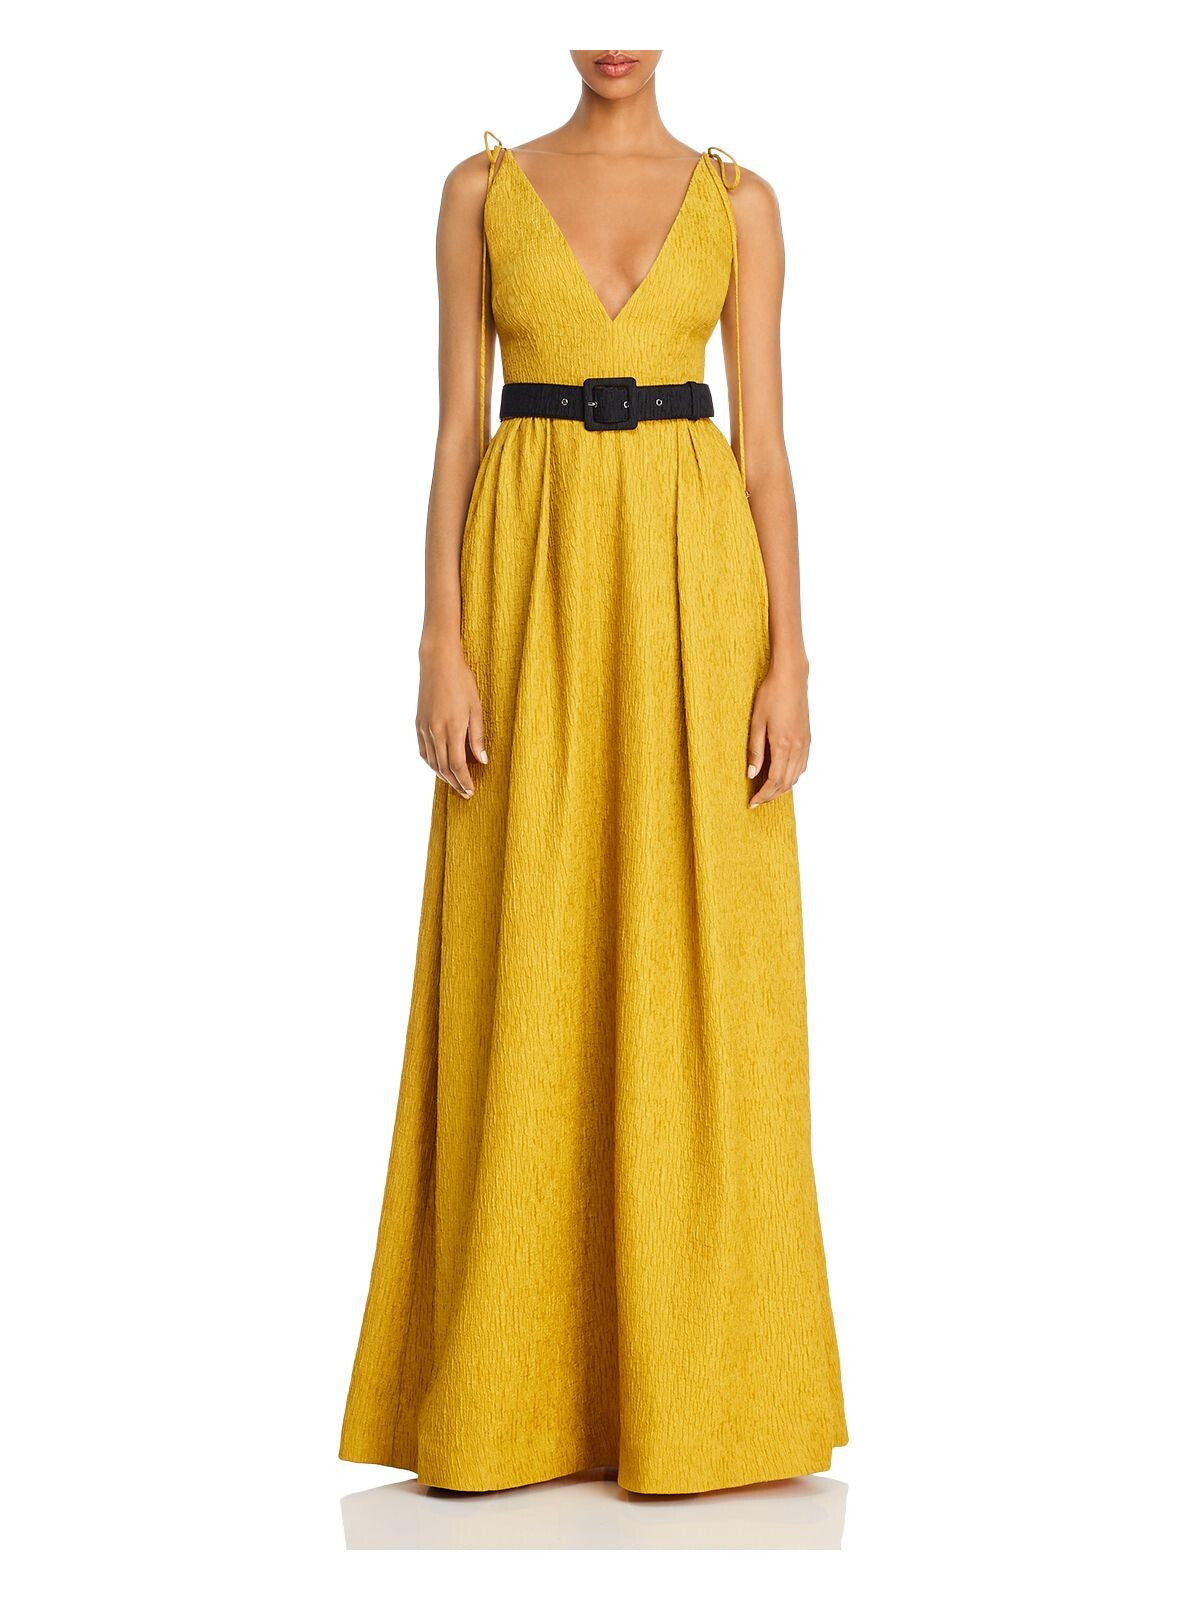 REBECCA VALLANCE Womens Yellow Sleeveless Empire Waist Evening Dress 0